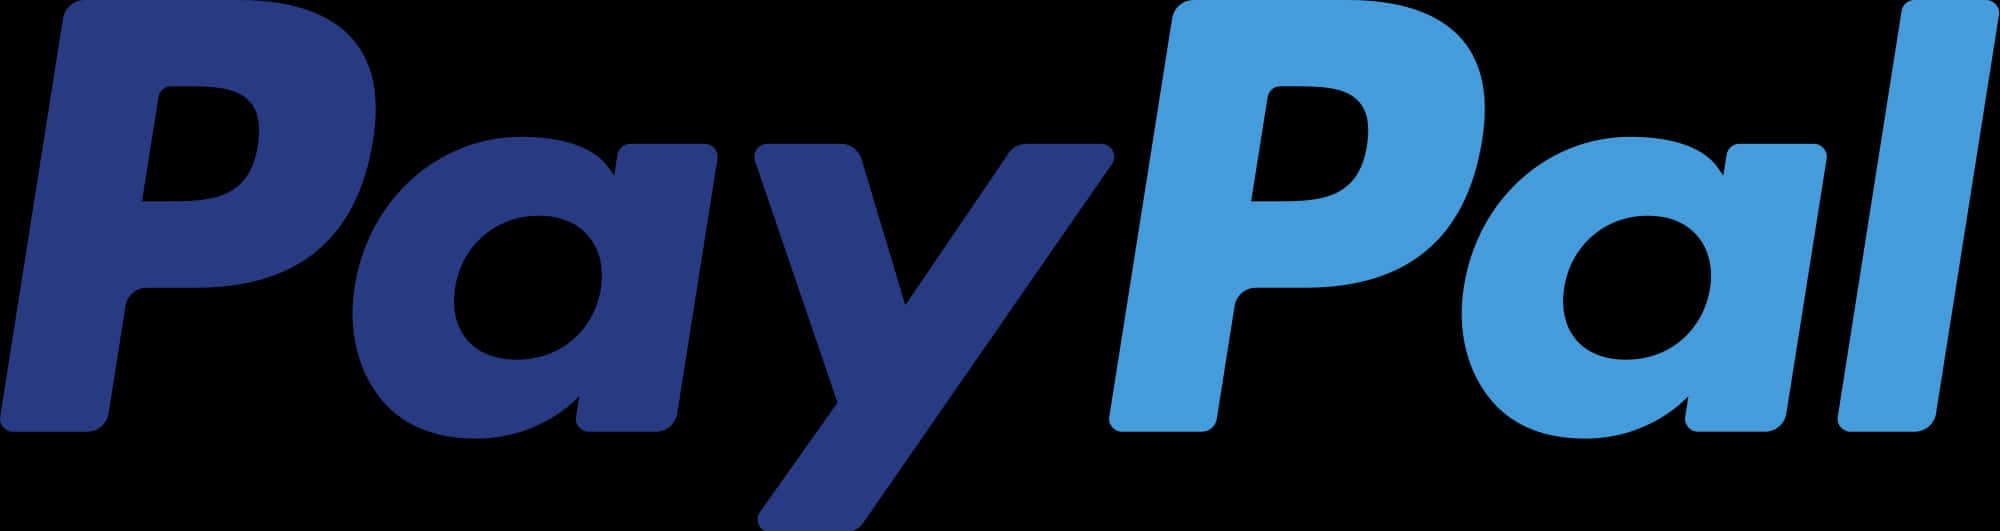 Pay Pal Logo Branding PNG image